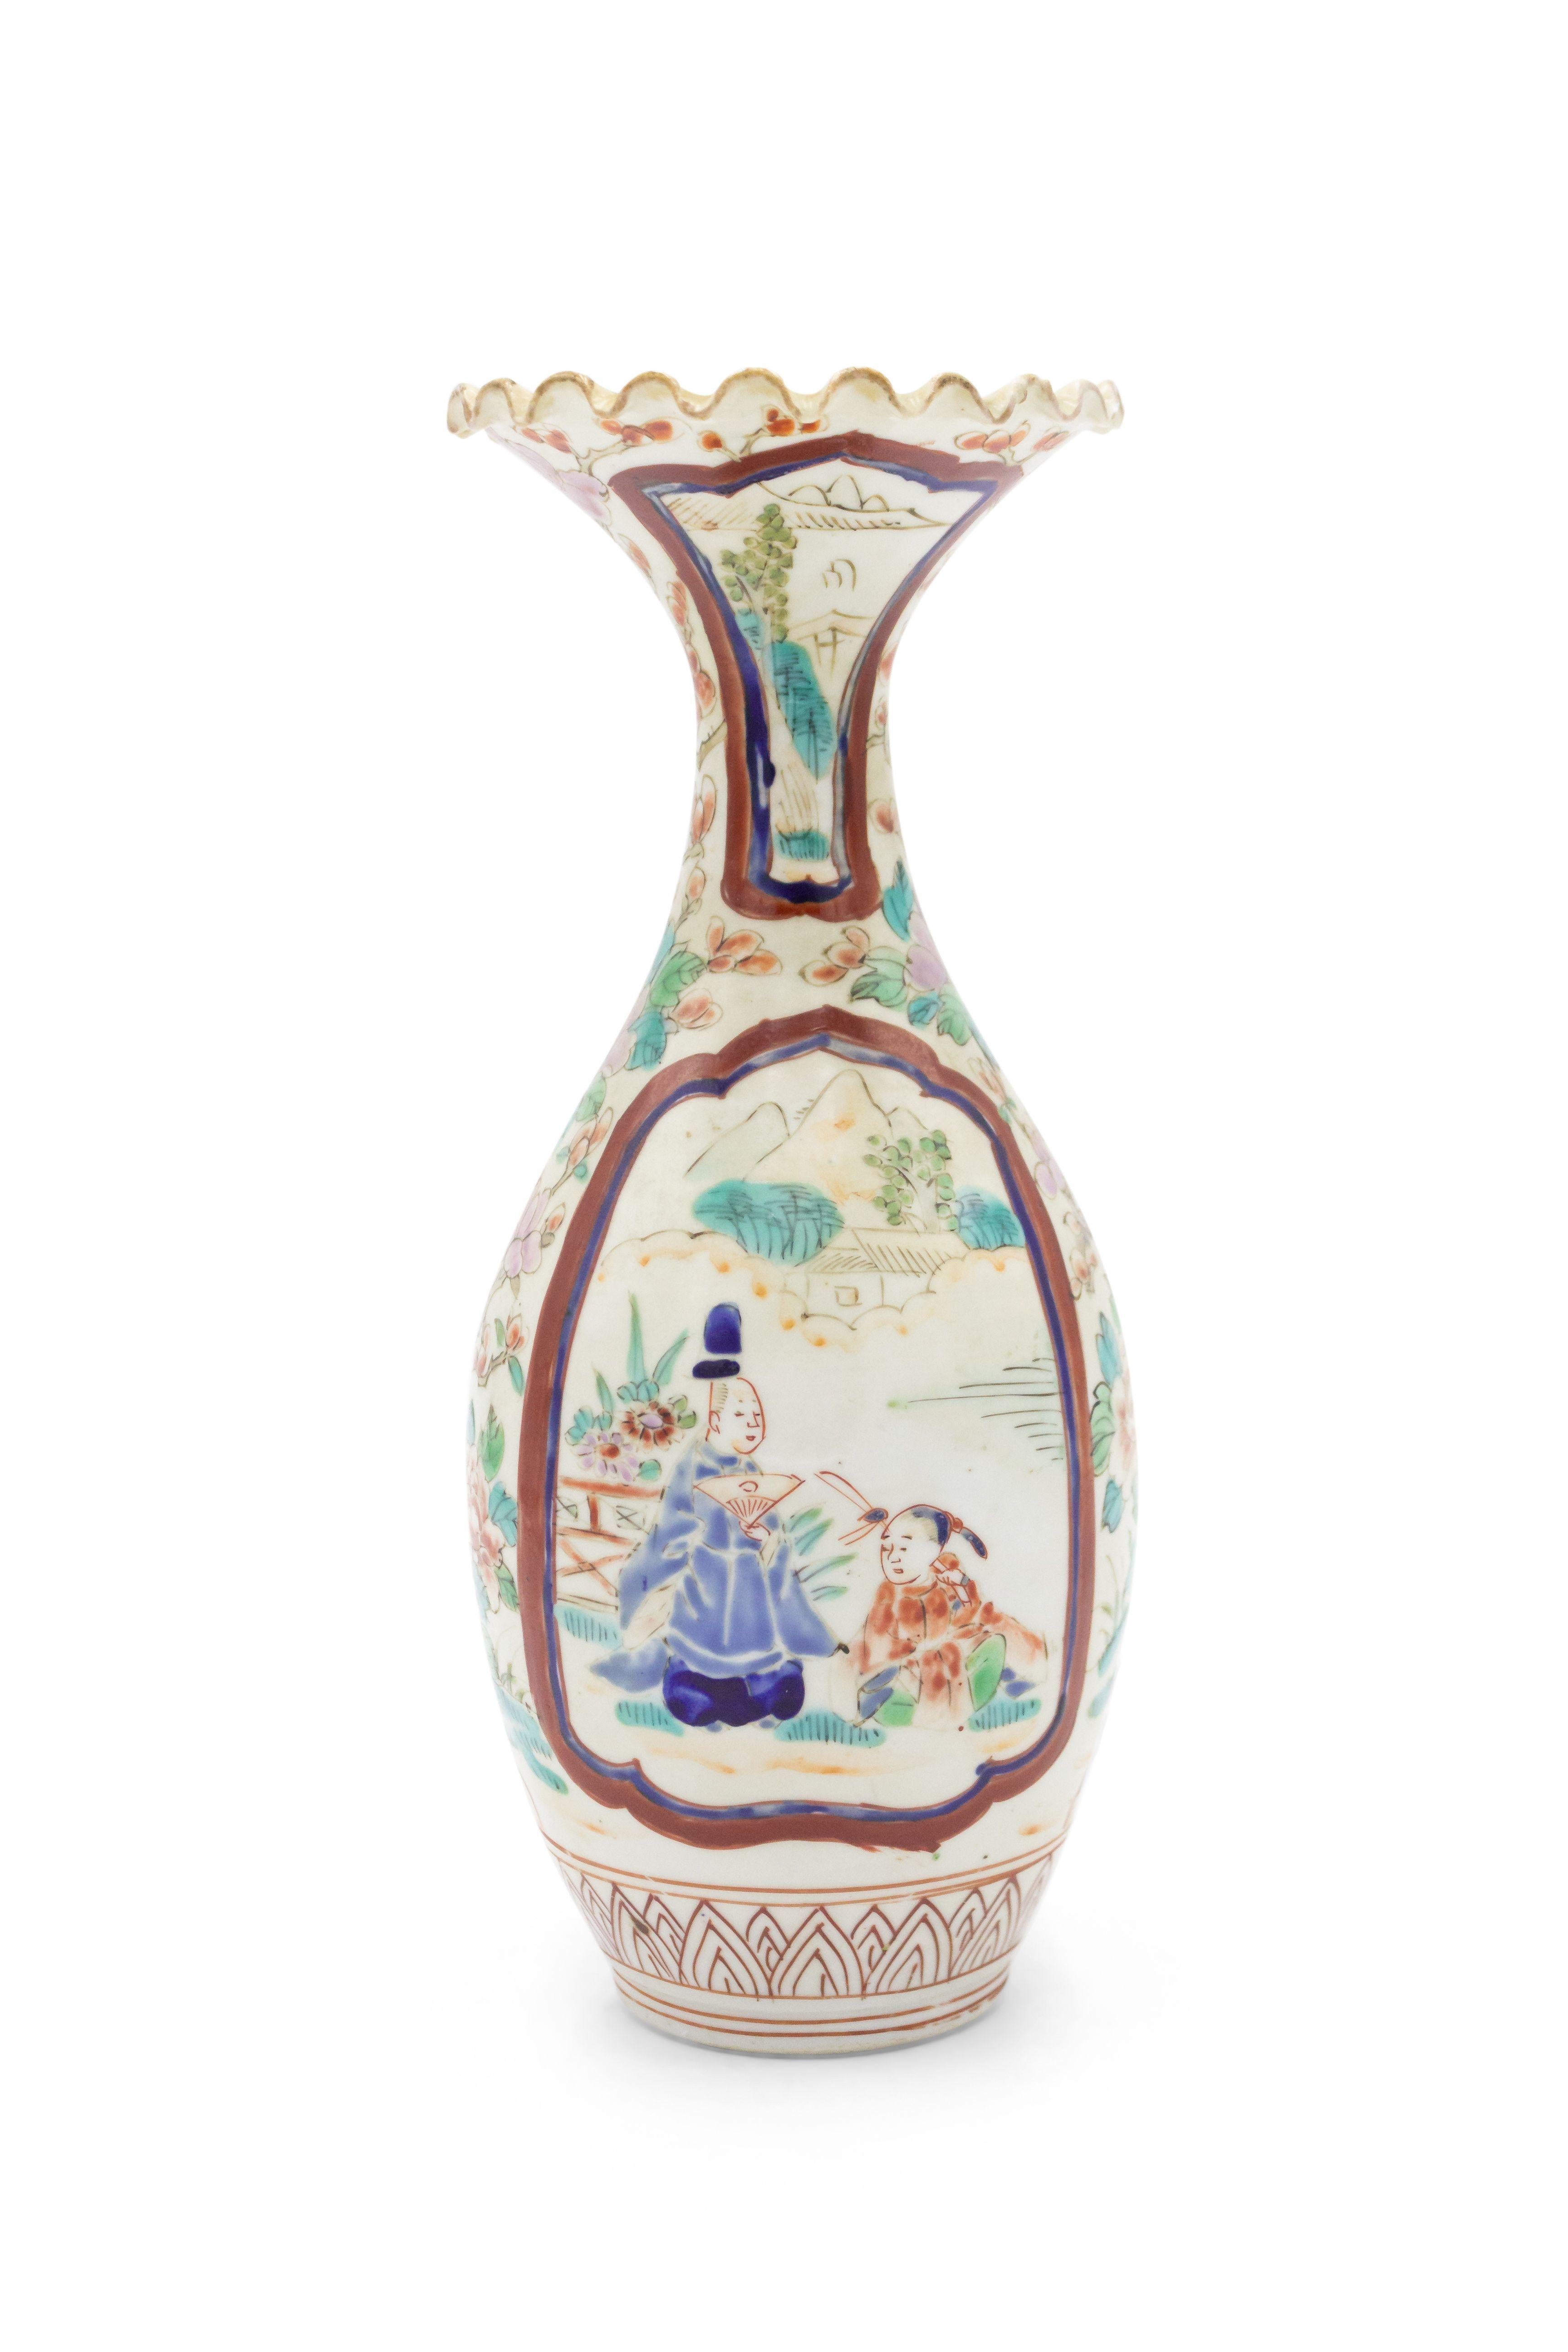 Paire de petits vases en porcelaine asiatique chinoise Imari (18e siècle) avec un sommet festonné et des scènes de personnages et de fleurs. (petit éclat à 1 sommet) (prix de la paire).
  